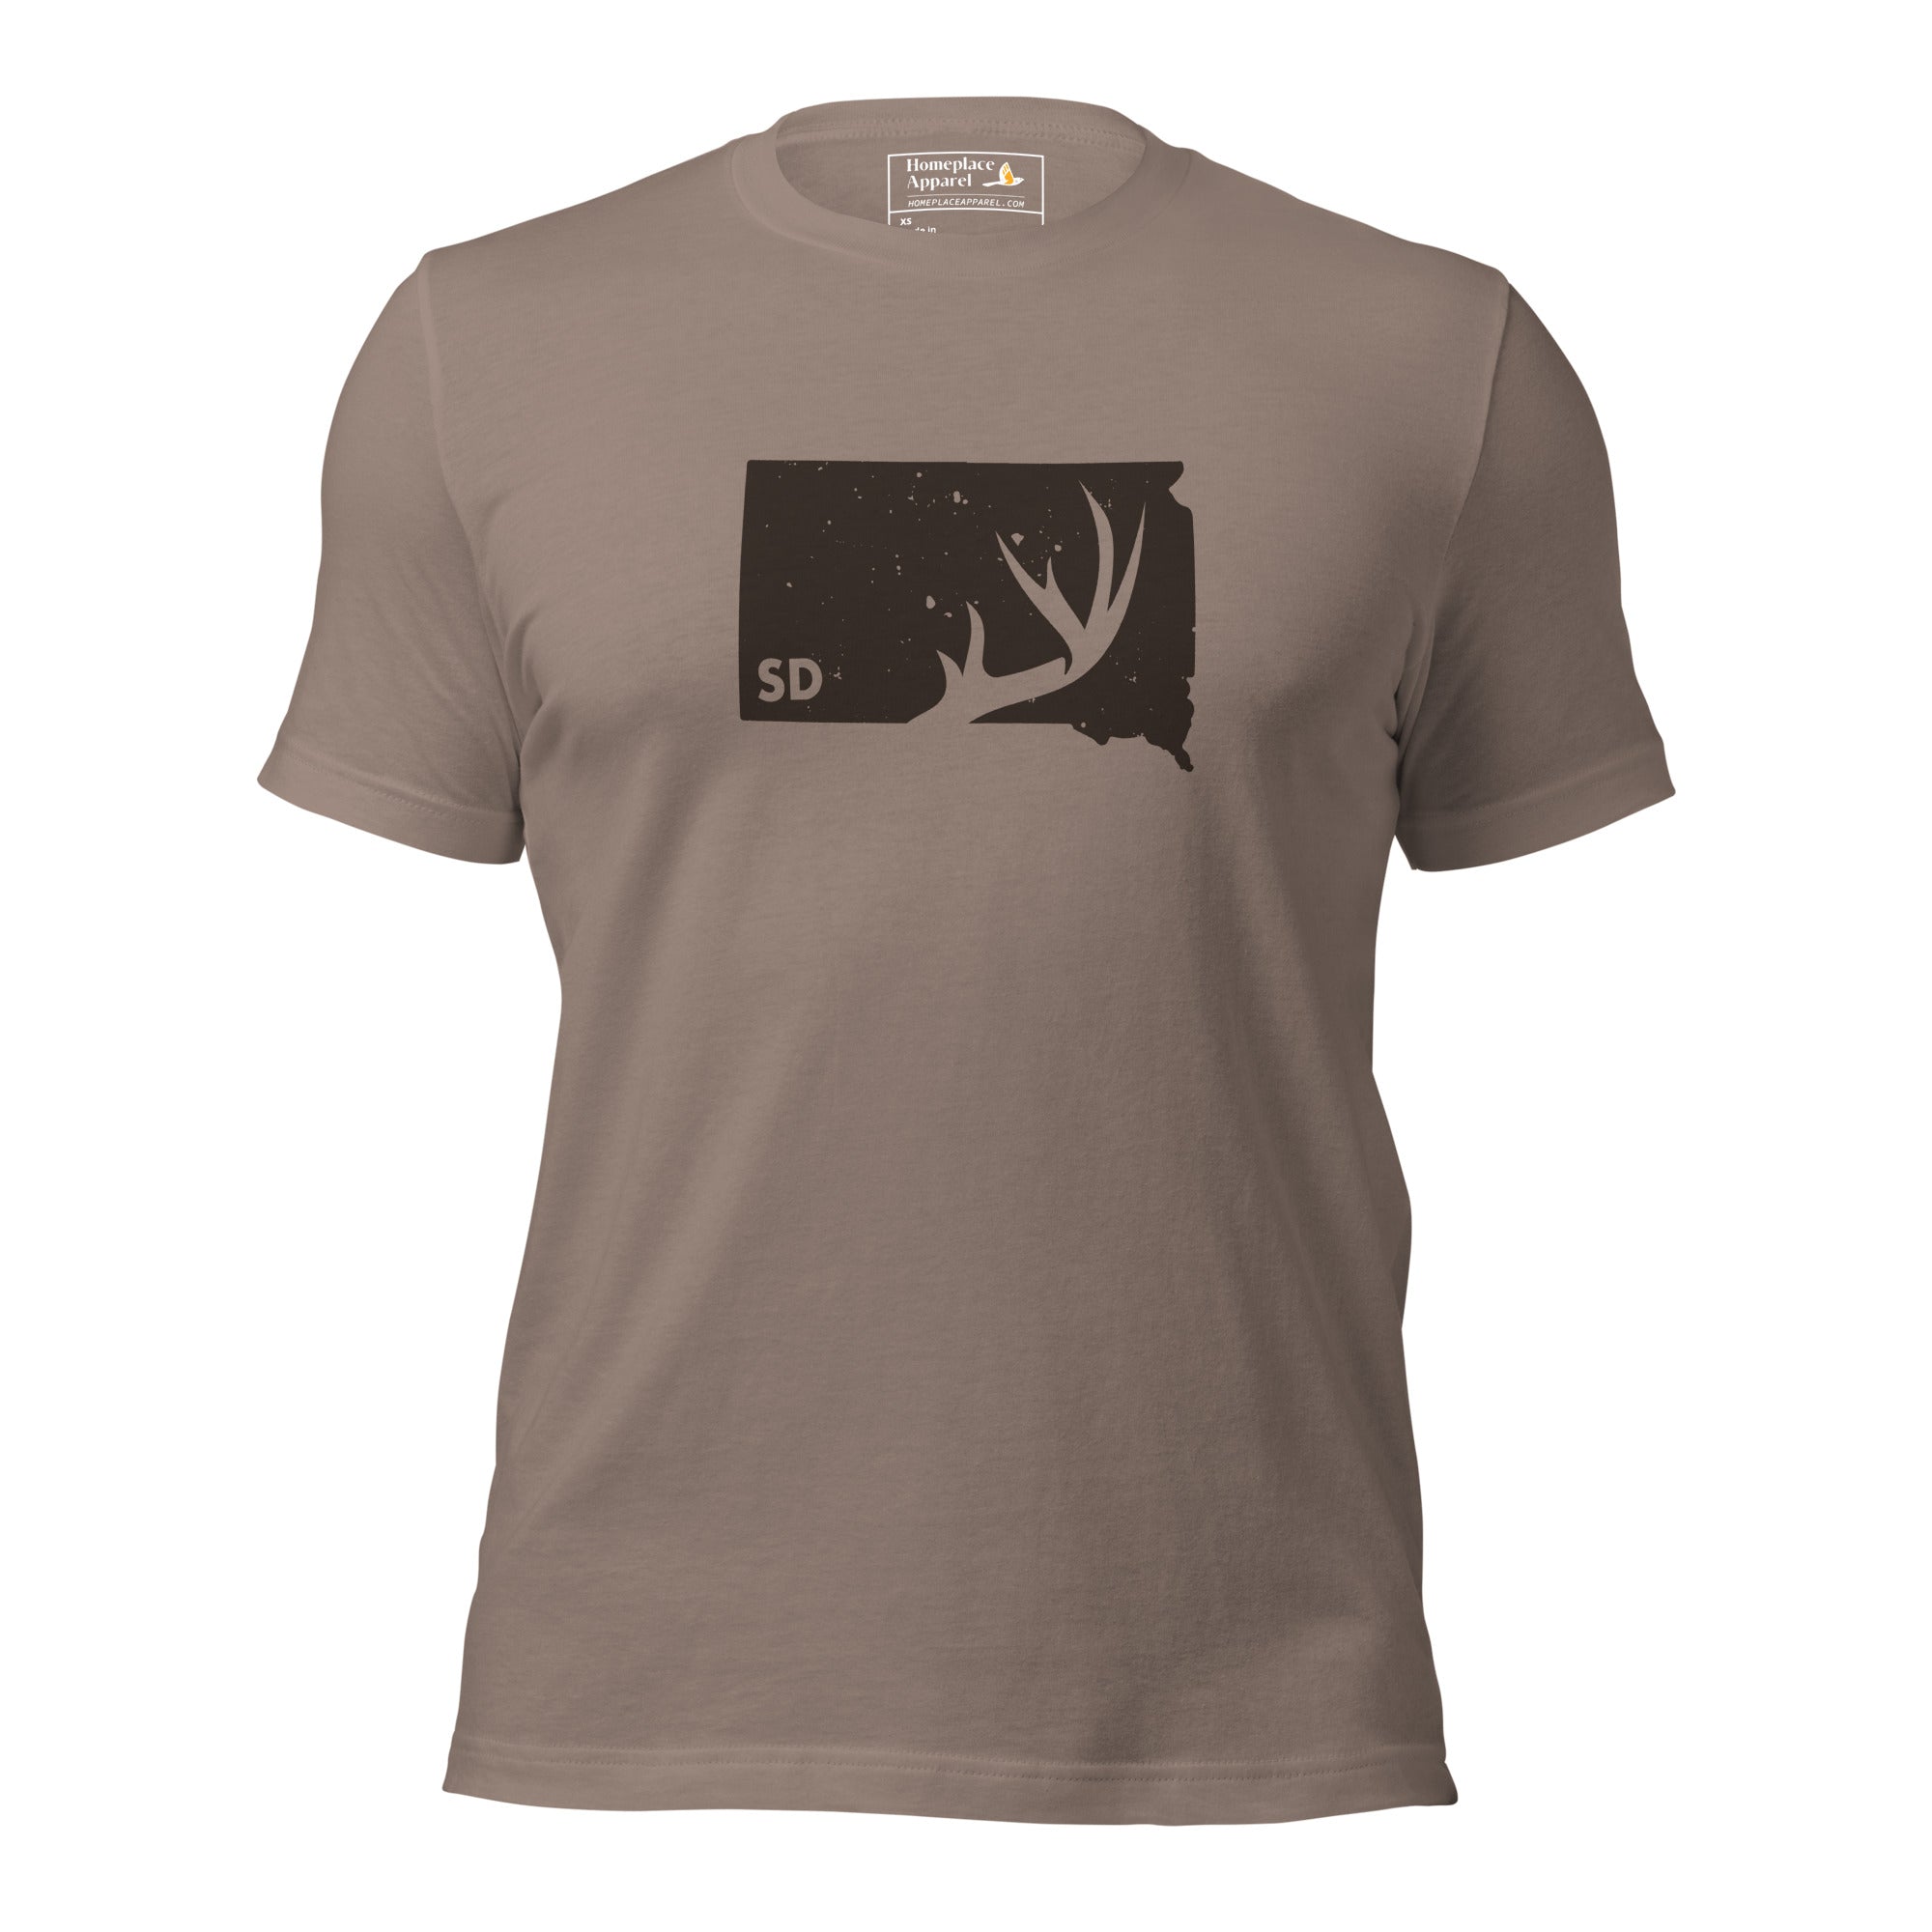 unisex-staple-t-shirt-pebble-front-65035dfd303cf.jpg